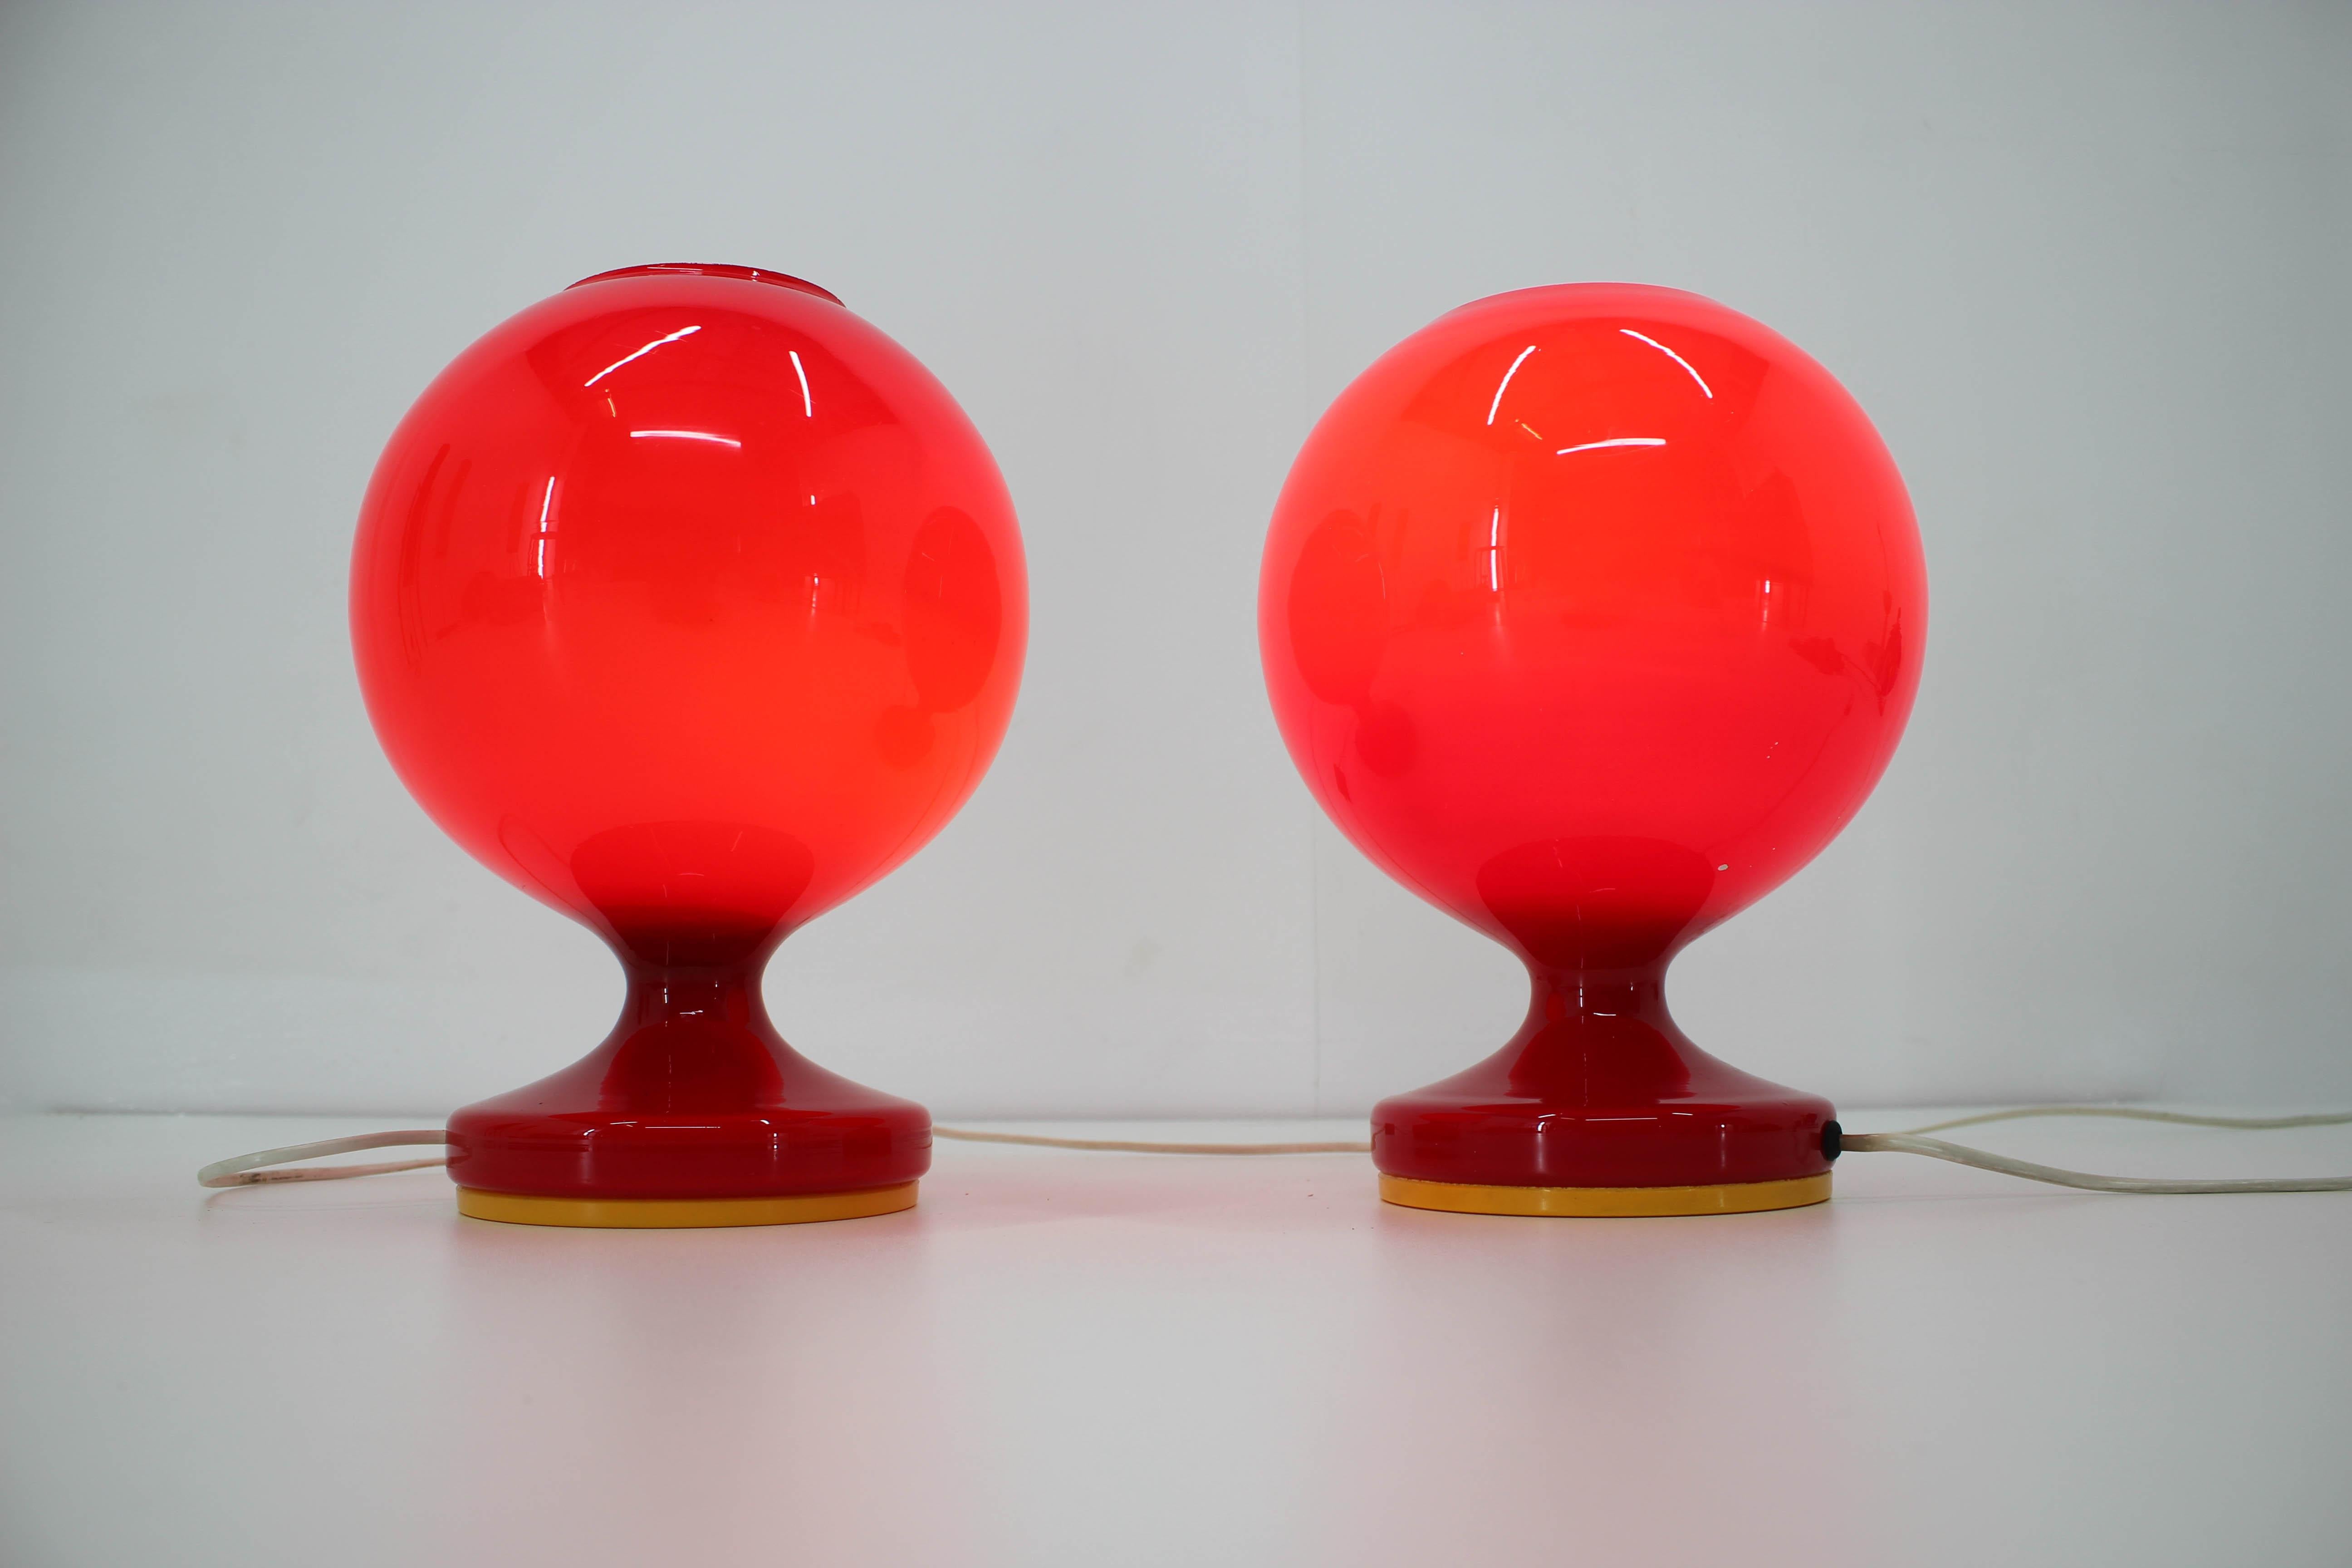 Zwei Tischlampen aus rotem Glas, entworfen von Stepan Tabery für Osvetlovaci sklo, Valasske Mezirici.
Guter Originalzustand, kleine Schäden am Rande eines Schirms, wie auf dem Foto zu sehen
60W, E27 oder E26 Glühbirne
Etikettiert.   
 